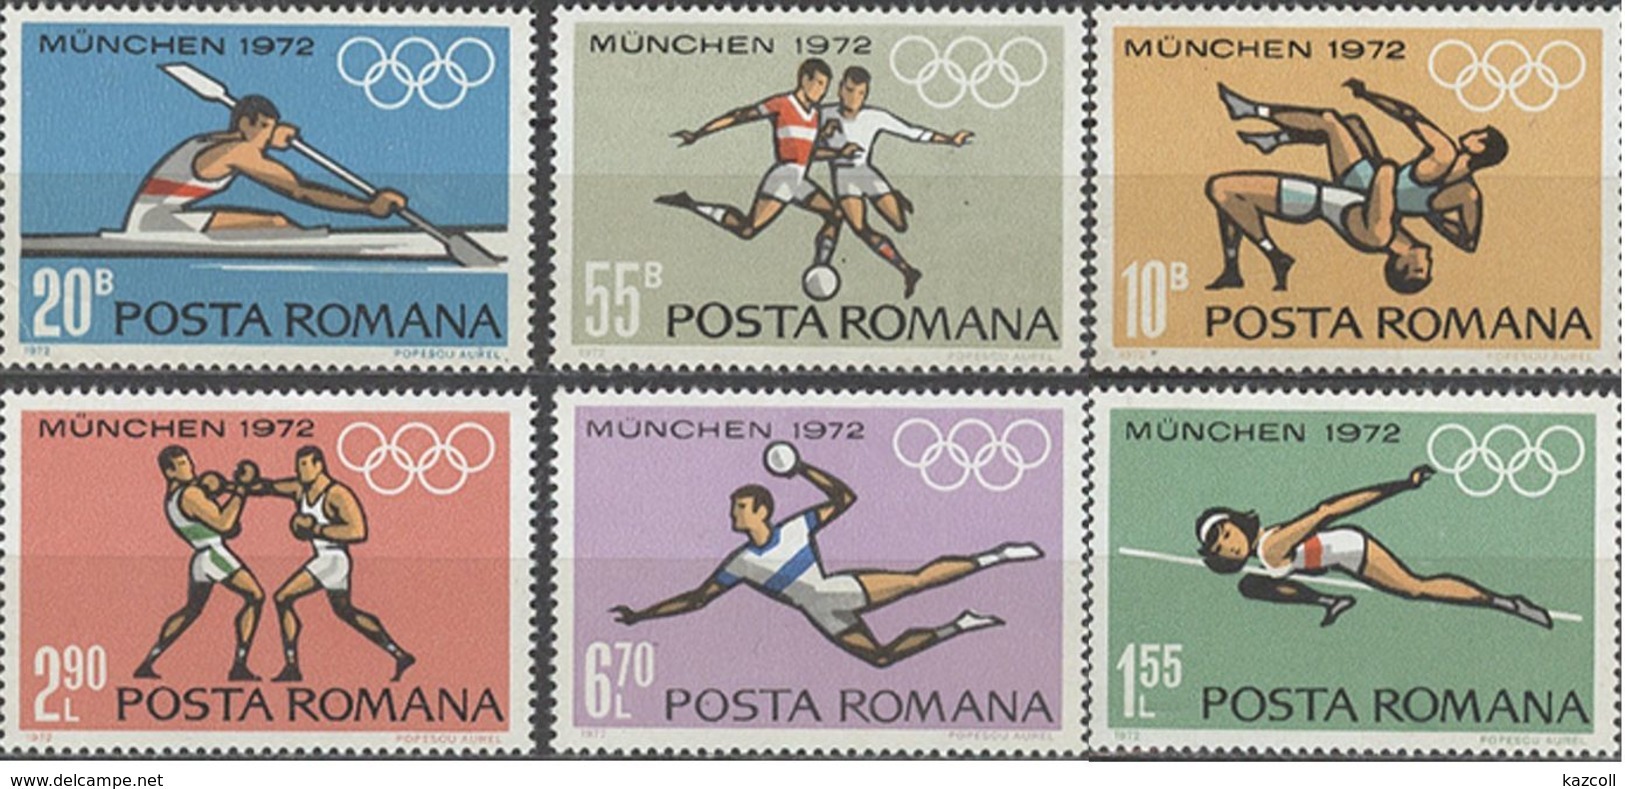 Румынский спорт. Олимпийские игры в Мюнхене 1972 доклад. Марка Мюнхен 1972 цена. Игры мюнхен 1972